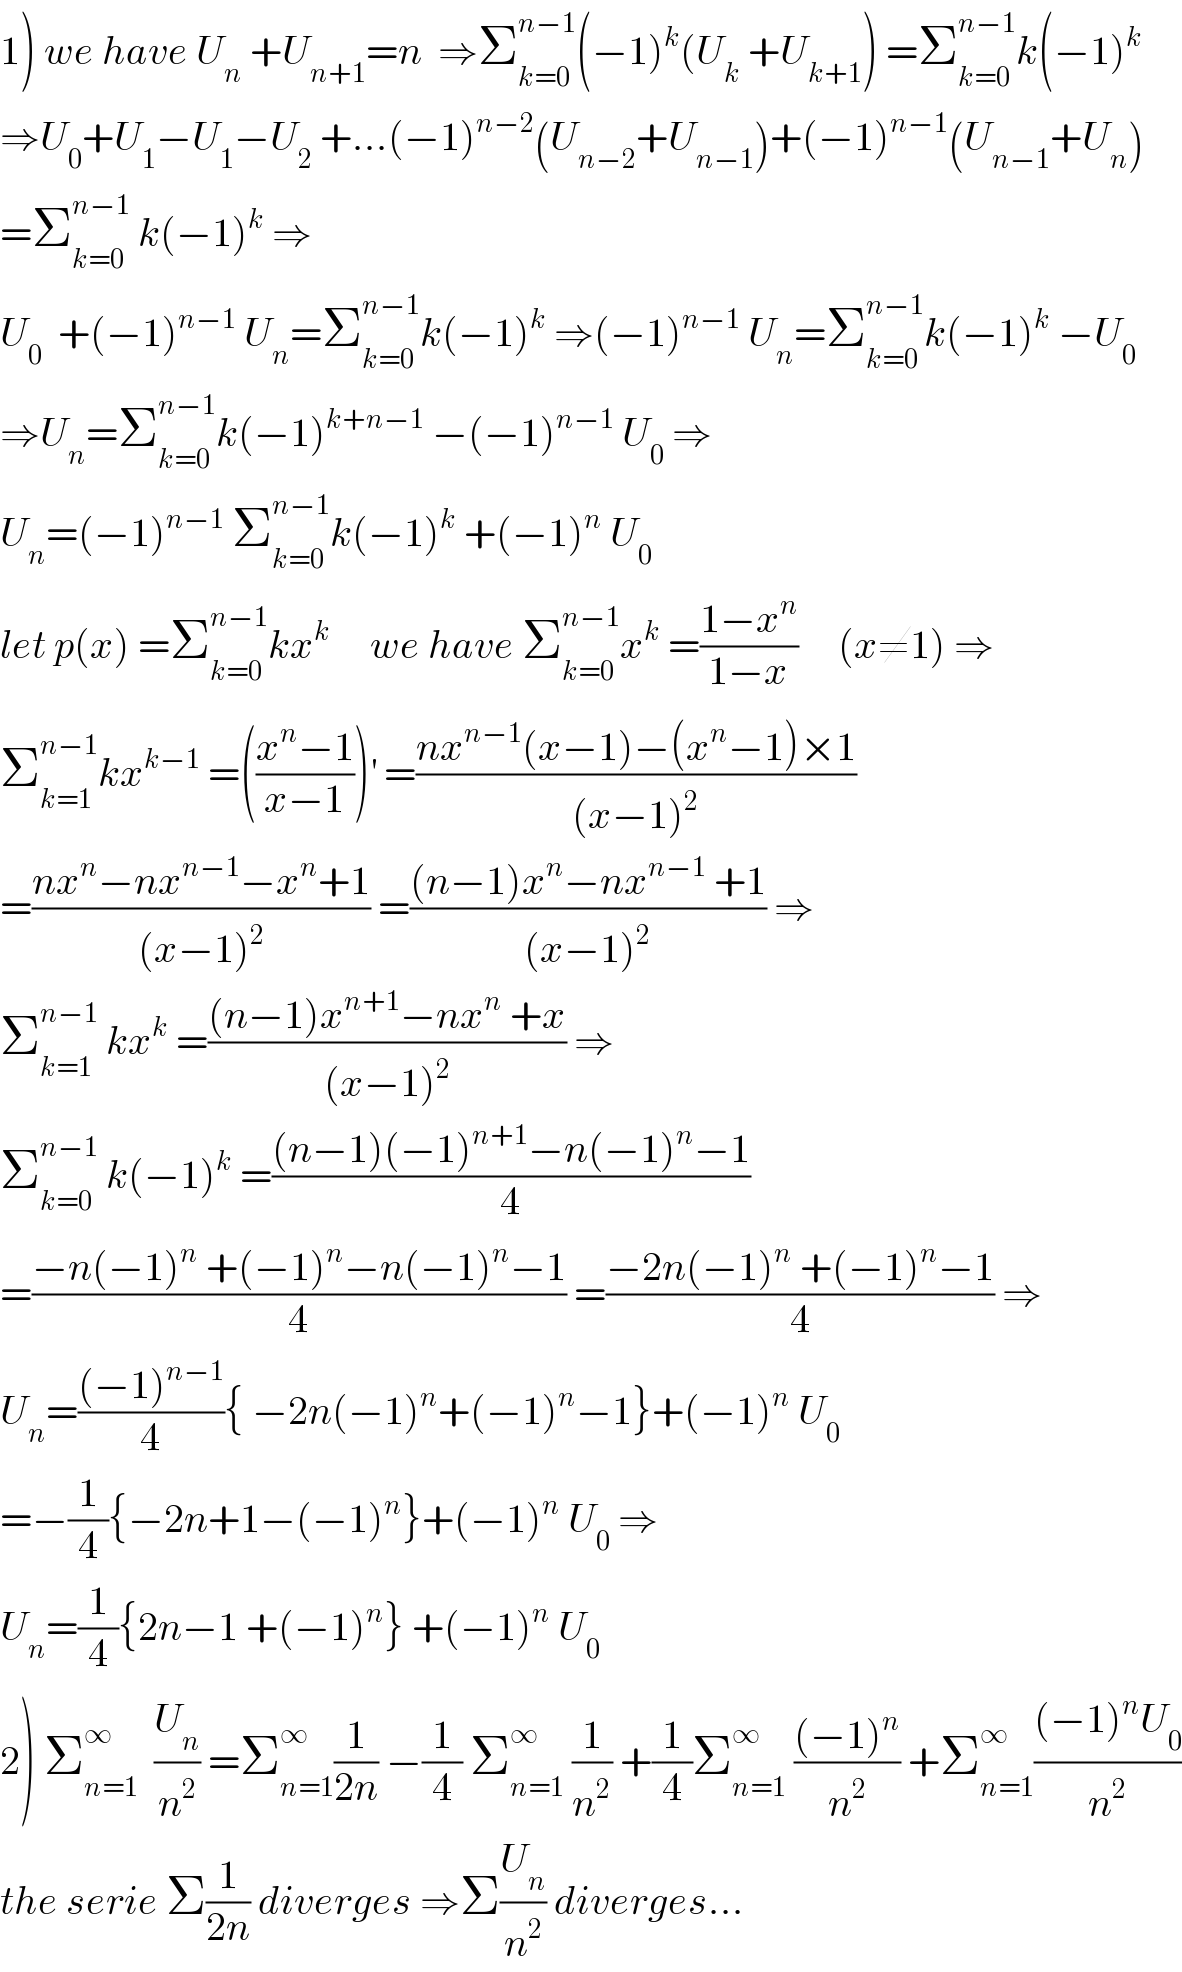 1) we have U_n  +U_(n+1) =n  ⇒Σ_(k=0) ^(n−1) (−1)^k (U_k  +U_(k+1) ) =Σ_(k=0) ^(n−1) k(−1)^k   ⇒U_0 +U_1 −U_1 −U_2  +...(−1)^(n−2) (U_(n−2) +U_(n−1) )+(−1)^(n−1) (U_(n−1) +U_n )  =Σ_(k=0) ^(n−1)  k(−1)^k  ⇒  U_0   +(−1)^(n−1)  U_n =Σ_(k=0) ^(n−1) k(−1)^k  ⇒(−1)^(n−1)  U_n =Σ_(k=0) ^(n−1) k(−1)^k  −U_0   ⇒U_n =Σ_(k=0) ^(n−1) k(−1)^(k+n−1)  −(−1)^(n−1)  U_0  ⇒  U_n =(−1)^(n−1)  Σ_(k=0) ^(n−1) k(−1)^k  +(−1)^n  U_0   let p(x) =Σ_(k=0) ^(n−1) kx^k      we have Σ_(k=0) ^(n−1) x^k  =((1−x^n )/(1−x))     (x≠1) ⇒  Σ_(k=1) ^(n−1) kx^(k−1)  =(((x^n −1)/(x−1)))^′  =((nx^(n−1) (x−1)−(x^n −1)×1)/((x−1)^2 ))  =((nx^n −nx^(n−1) −x^n +1)/((x−1)^2 )) =(((n−1)x^n −nx^(n−1)  +1)/((x−1)^2 )) ⇒  Σ_(k=1) ^(n−1)  kx^k  =(((n−1)x^(n+1) −nx^n  +x)/((x−1)^2 )) ⇒  Σ_(k=0) ^(n−1)  k(−1)^k  =(((n−1)(−1)^(n+1) −n(−1)^n −1)/4)  =((−n(−1)^n  +(−1)^n −n(−1)^n −1)/4) =((−2n(−1)^n  +(−1)^n −1)/4) ⇒  U_n =(((−1)^(n−1) )/4){ −2n(−1)^n +(−1)^n −1}+(−1)^n  U_0   =−(1/4){−2n+1−(−1)^n }+(−1)^n  U_0  ⇒  U_n =(1/4){2n−1 +(−1)^n } +(−1)^n  U_0   2) Σ_(n=1) ^∞   (U_n /n^2 ) =Σ_(n=1) ^∞ (1/(2n)) −(1/4) Σ_(n=1) ^∞  (1/n^2 ) +(1/4)Σ_(n=1) ^∞  (((−1)^n )/n^2 ) +Σ_(n=1) ^∞ (((−1)^n U_0 )/n^2 )  the serie Σ(1/(2n)) diverges ⇒Σ(U_n /n^2 ) diverges...  